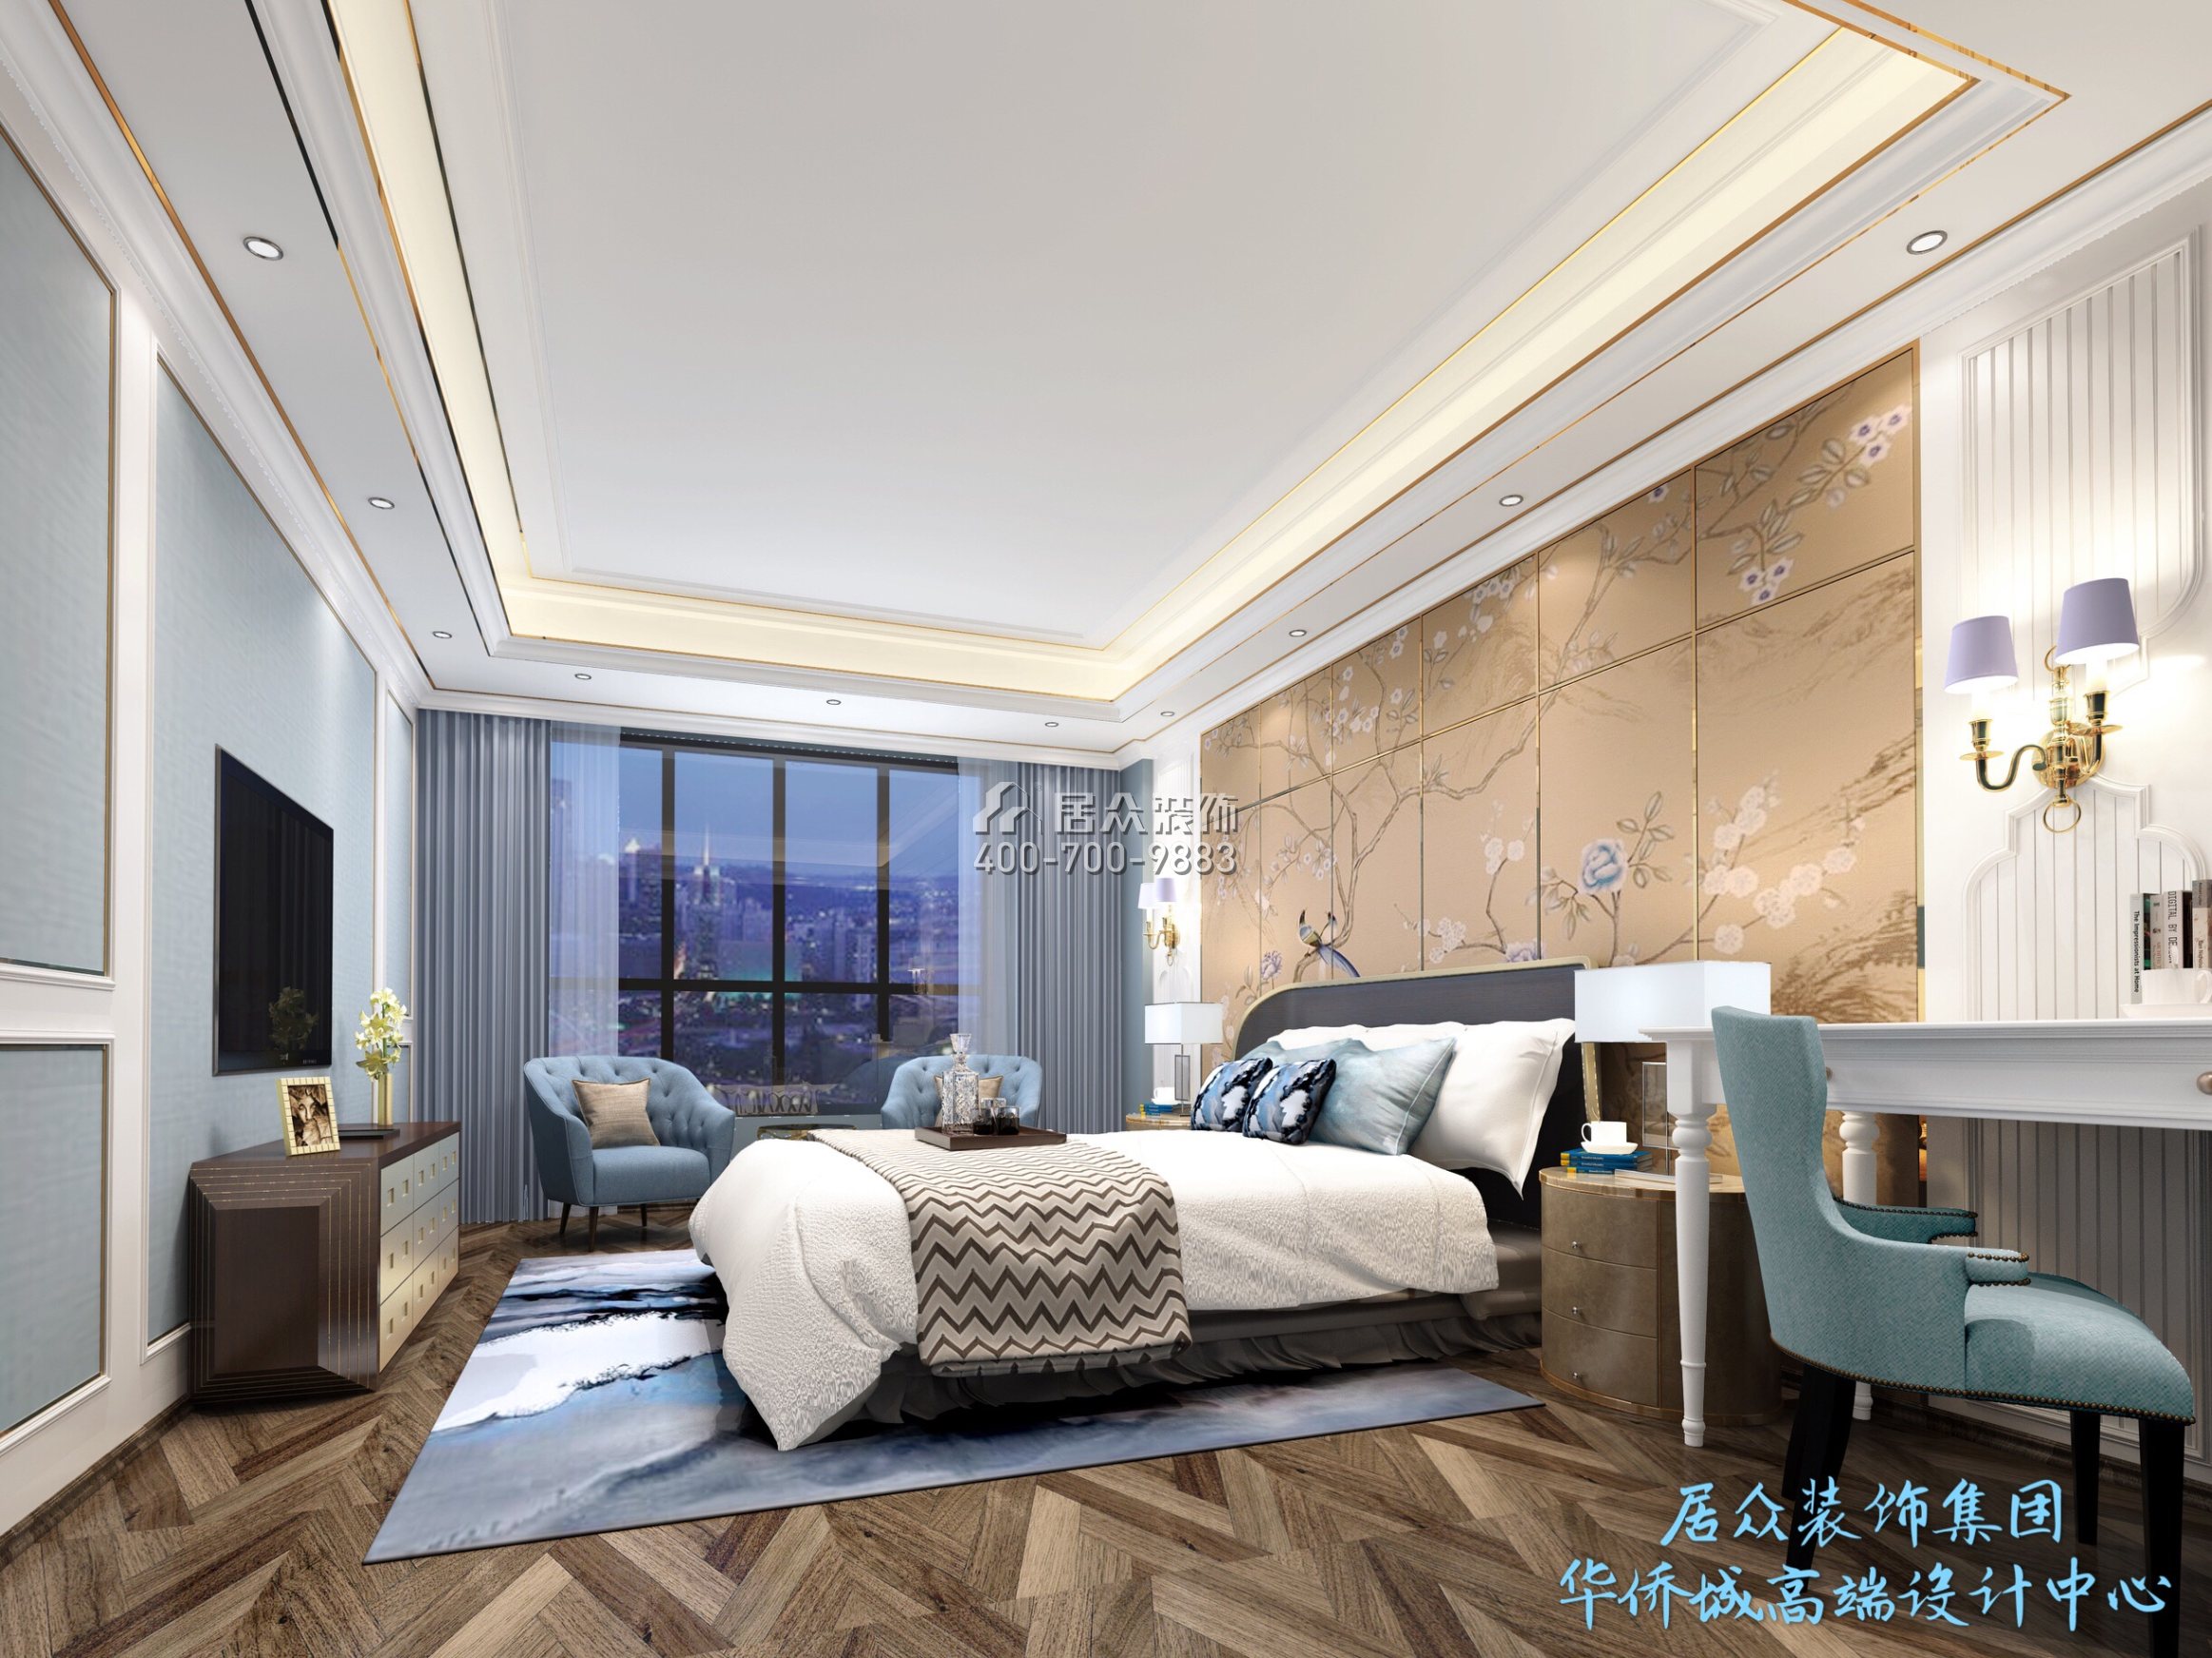 香蜜湖九号大院220平方米欧式风格平层户型卧室装修效果图